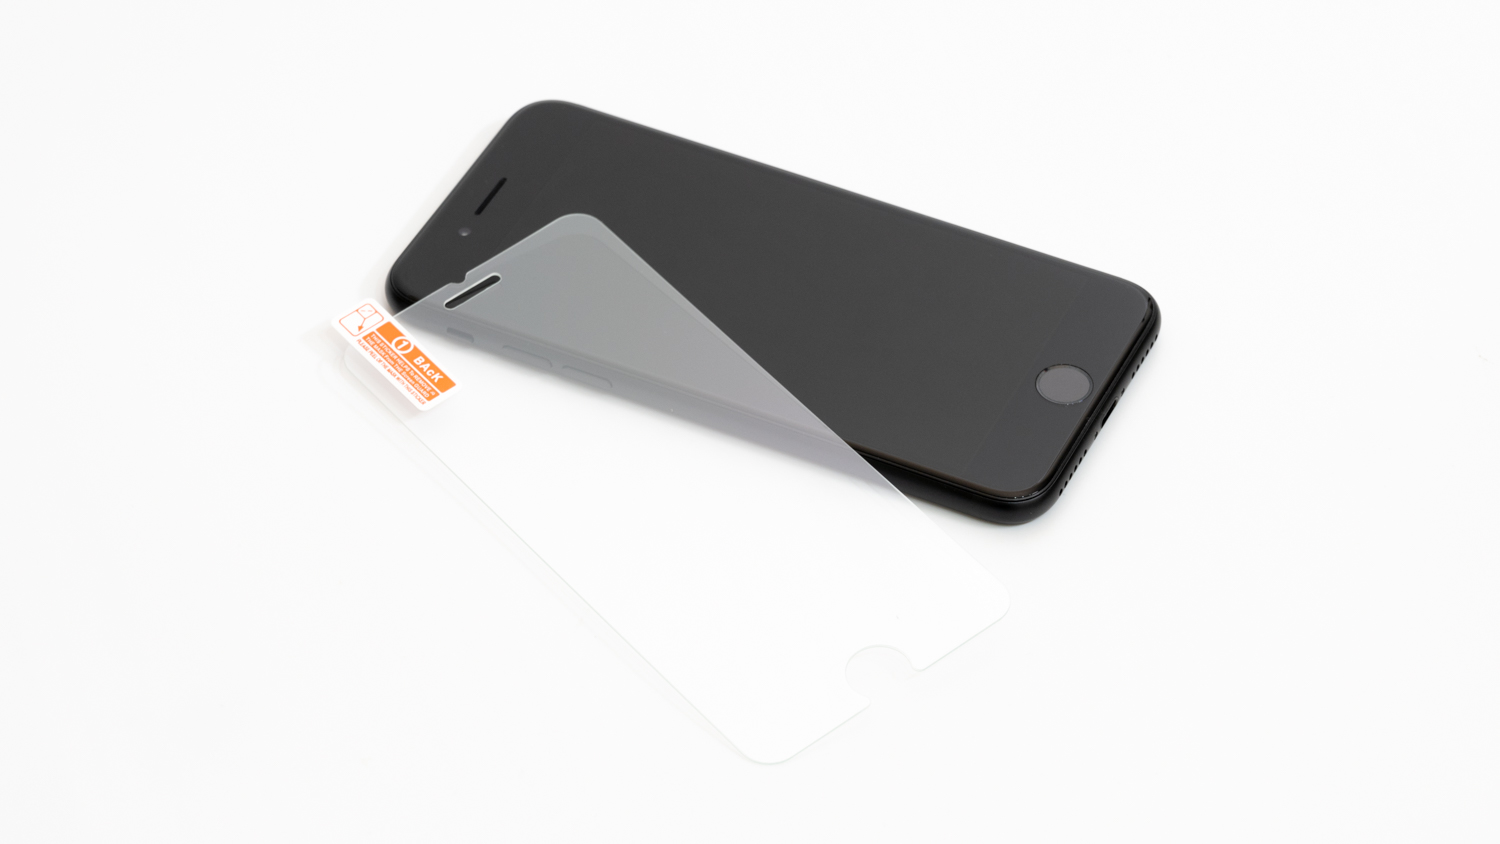 iPhone SE (第2世代) にiPhone 8用のガラスフィルムを貼ると、浮きます